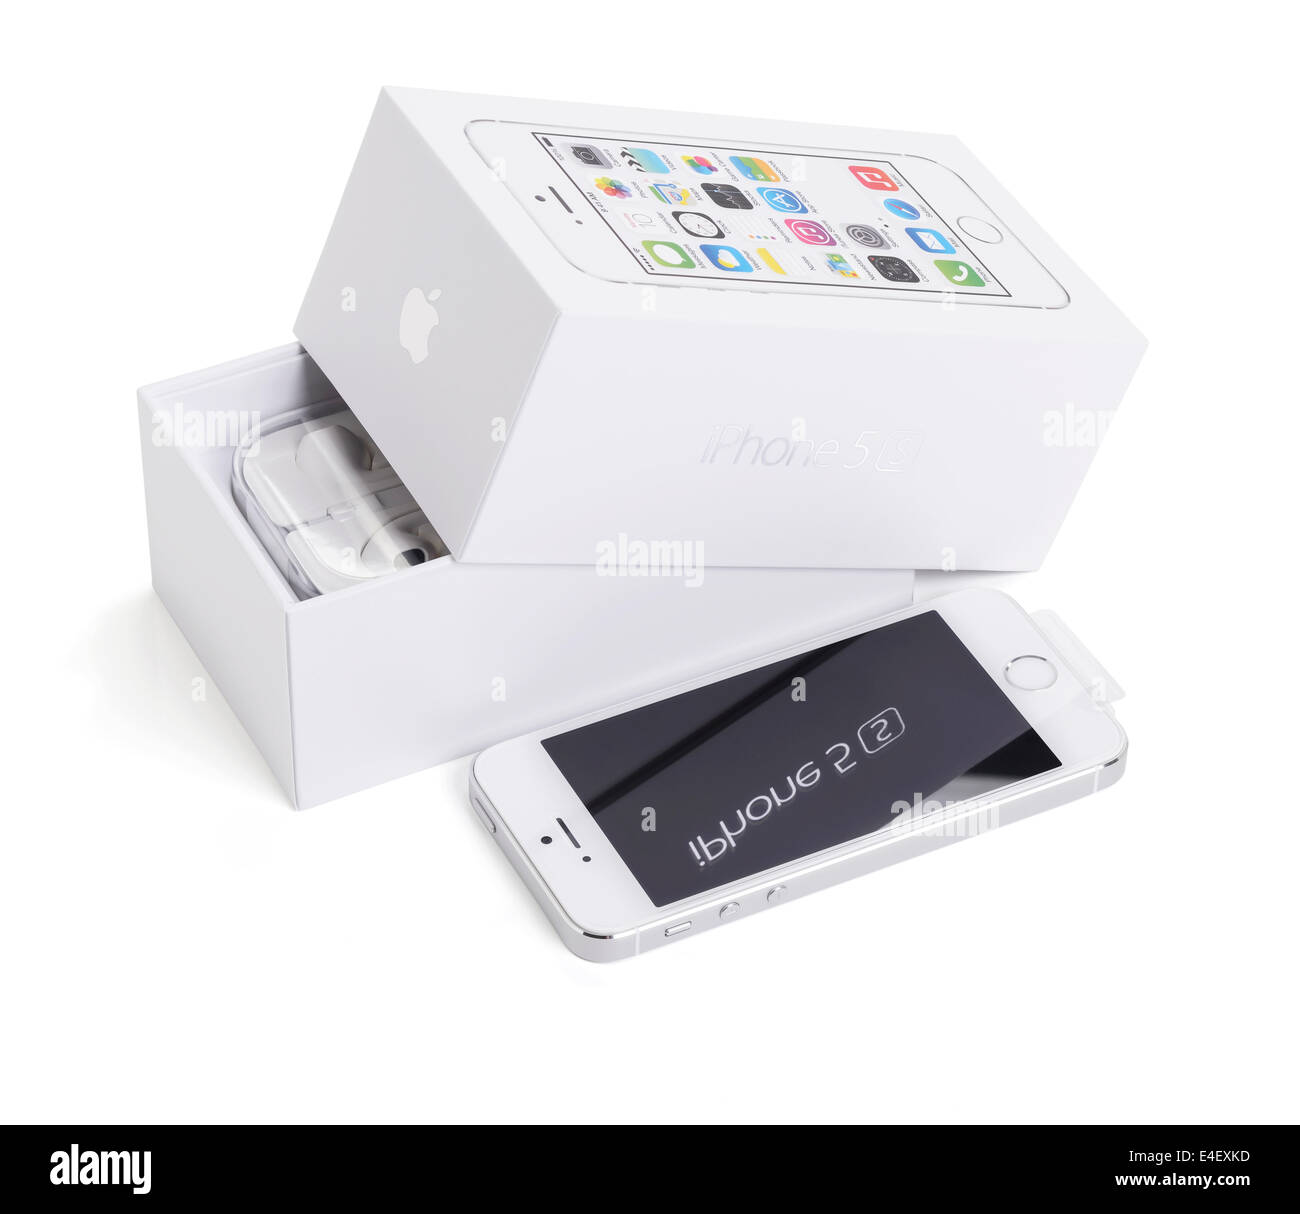 Un Apple iPhone 5s con el embalaje original Foto de stock